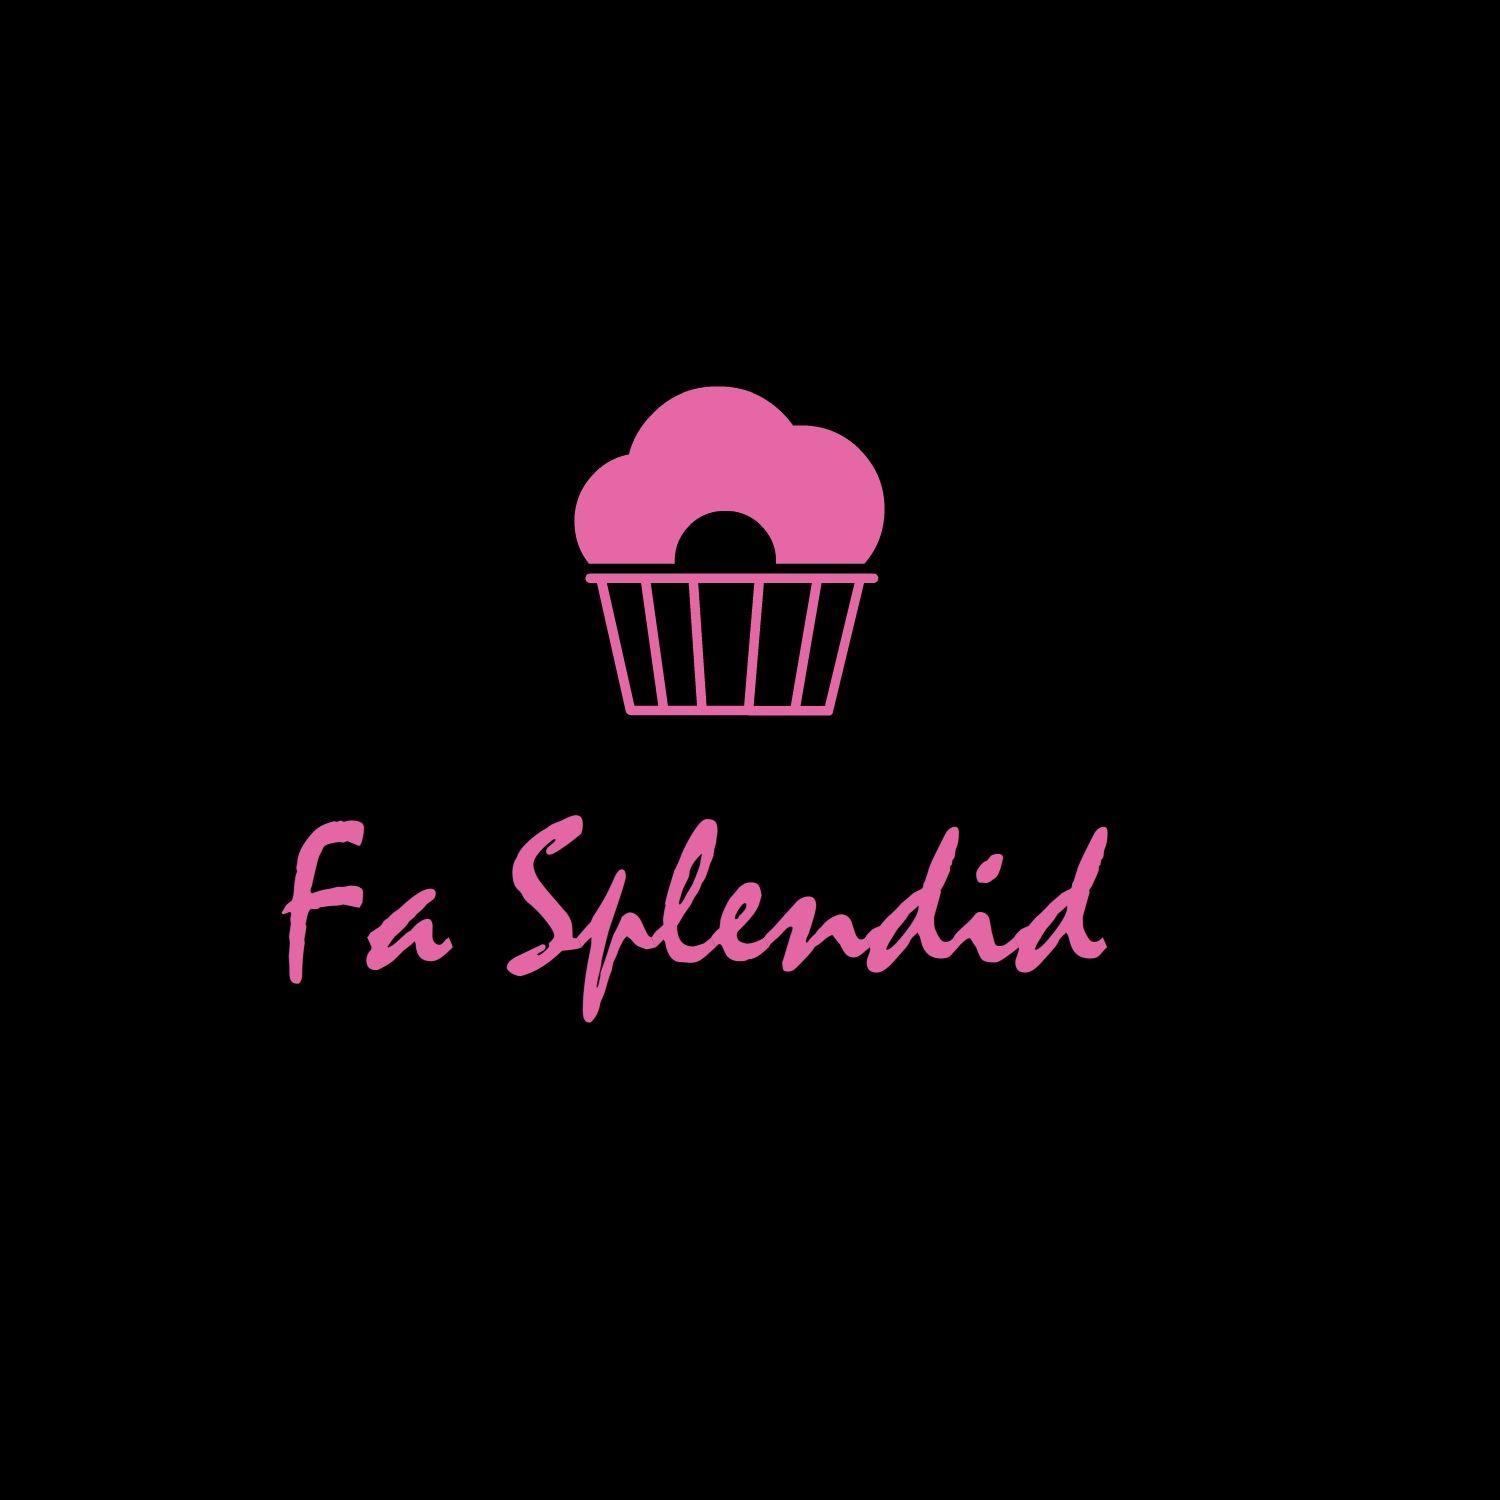 Splendid Logo - Elegant, Feminine Logo Design for Fa Splendid or Fa